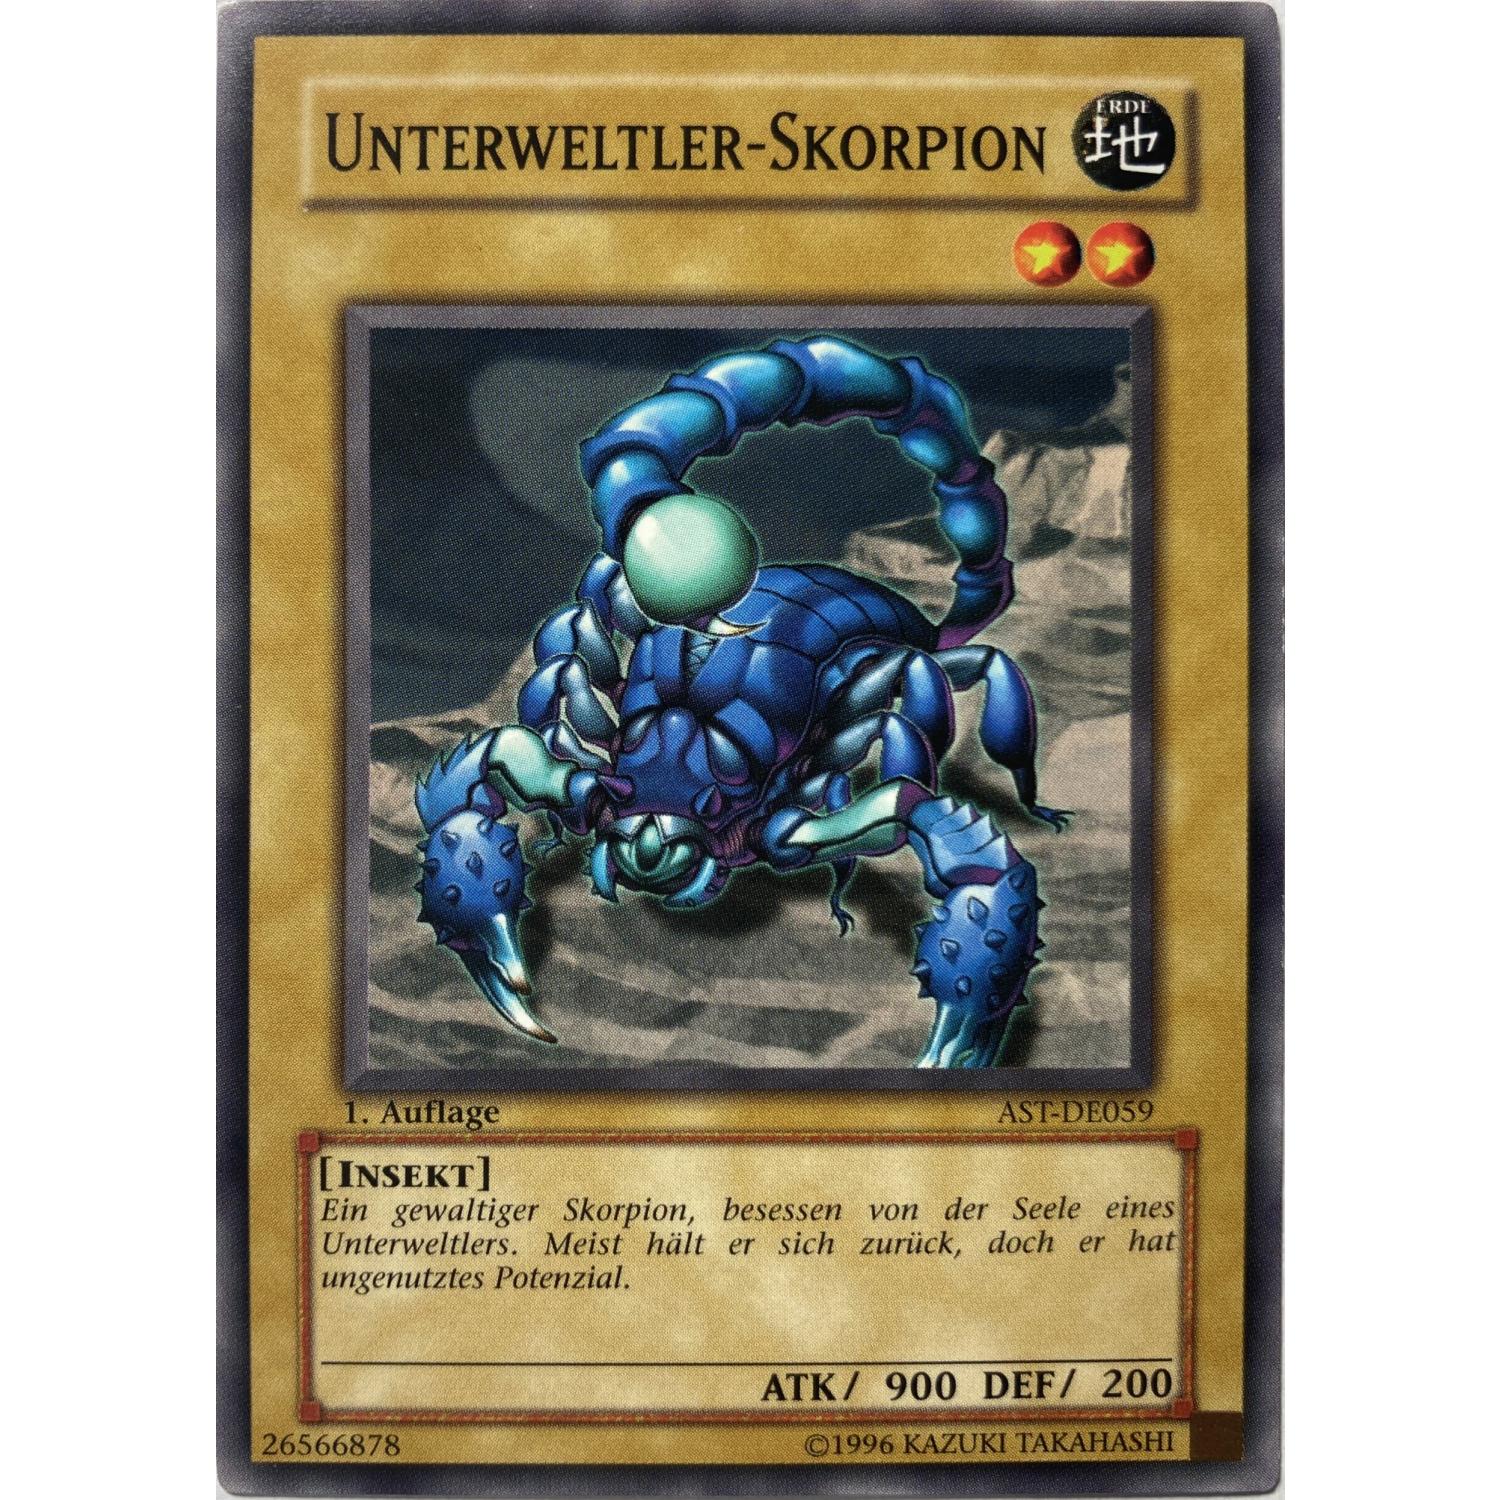 Unterweltler-Skorpion 1. Auflage AST-DE059 Common | EX